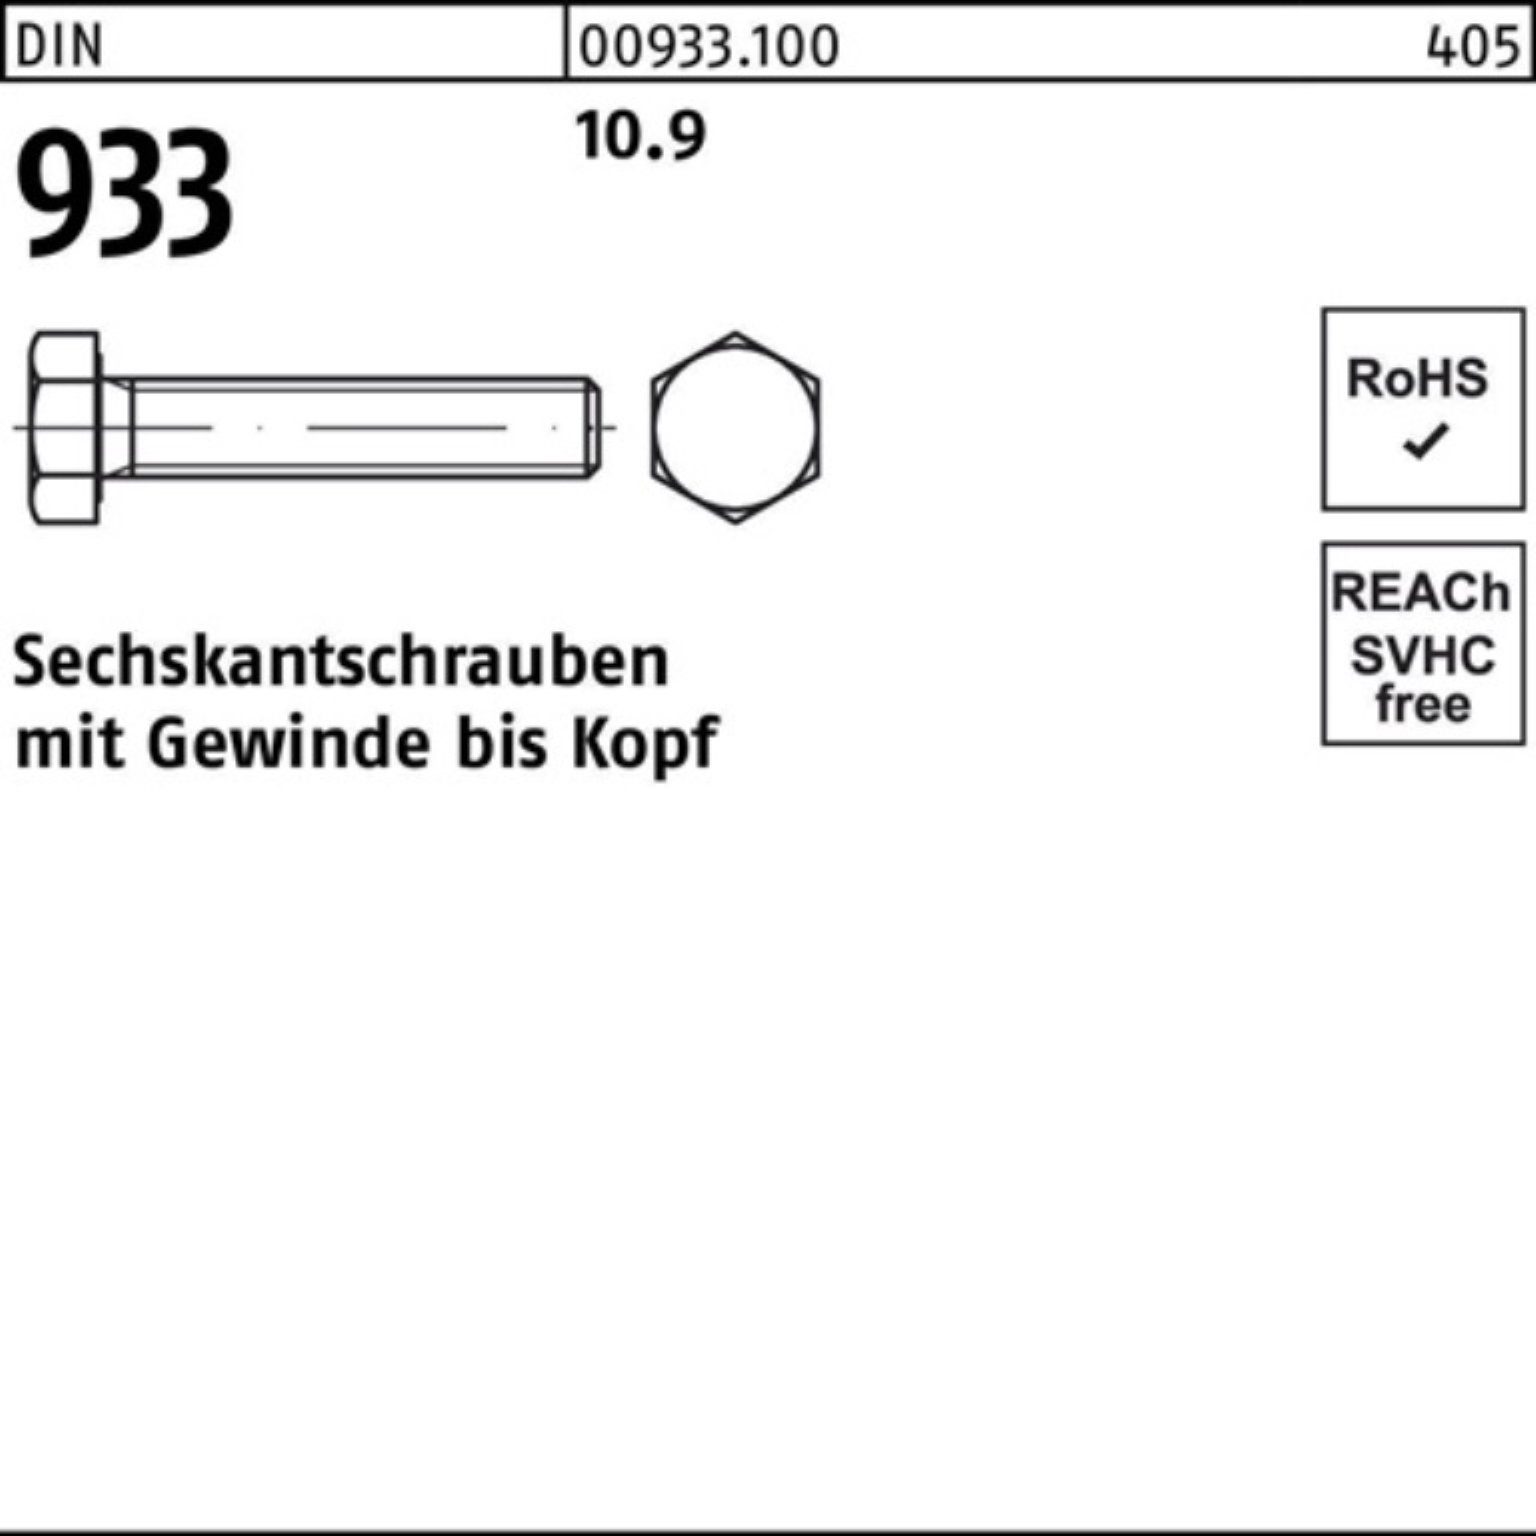 Sechskantschraube 100er 93 933 DIN DIN M16x 25 Sechskantschraube 10.9 190 VG Pack Reyher Stück